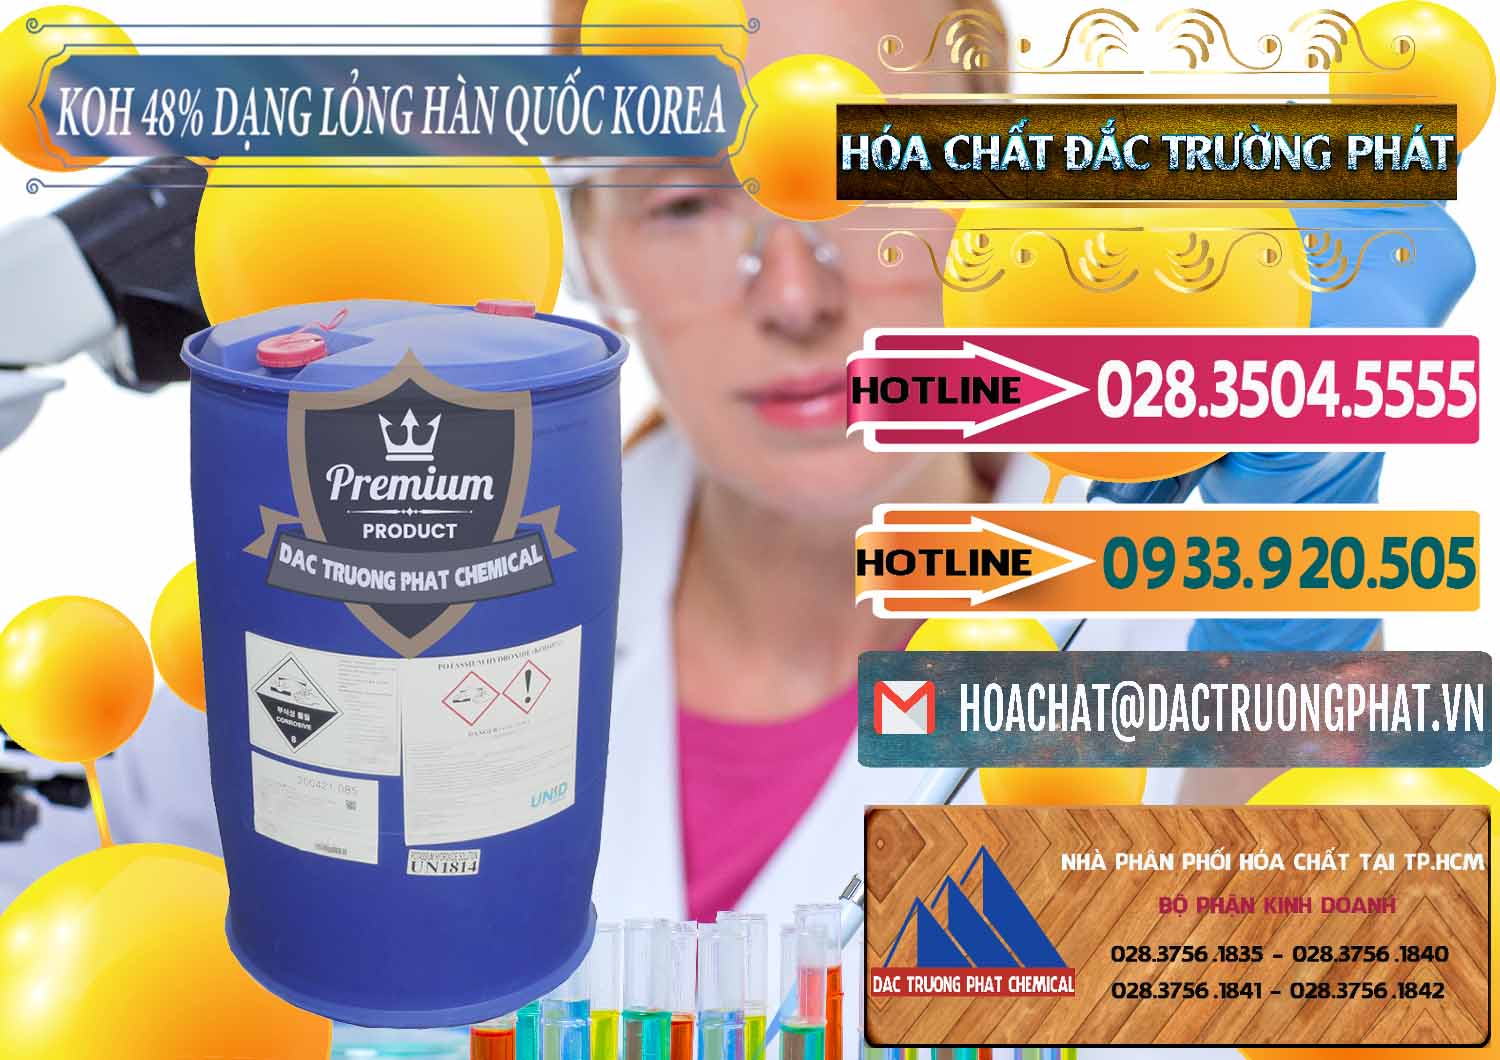 Nơi chuyên kinh doanh & bán KOH Dạng Nước – Potassium Hydroxide Lỏng 48% Hàn Quốc Korea - 0293 - Công ty chuyên phân phối và nhập khẩu hóa chất tại TP.HCM - dactruongphat.vn